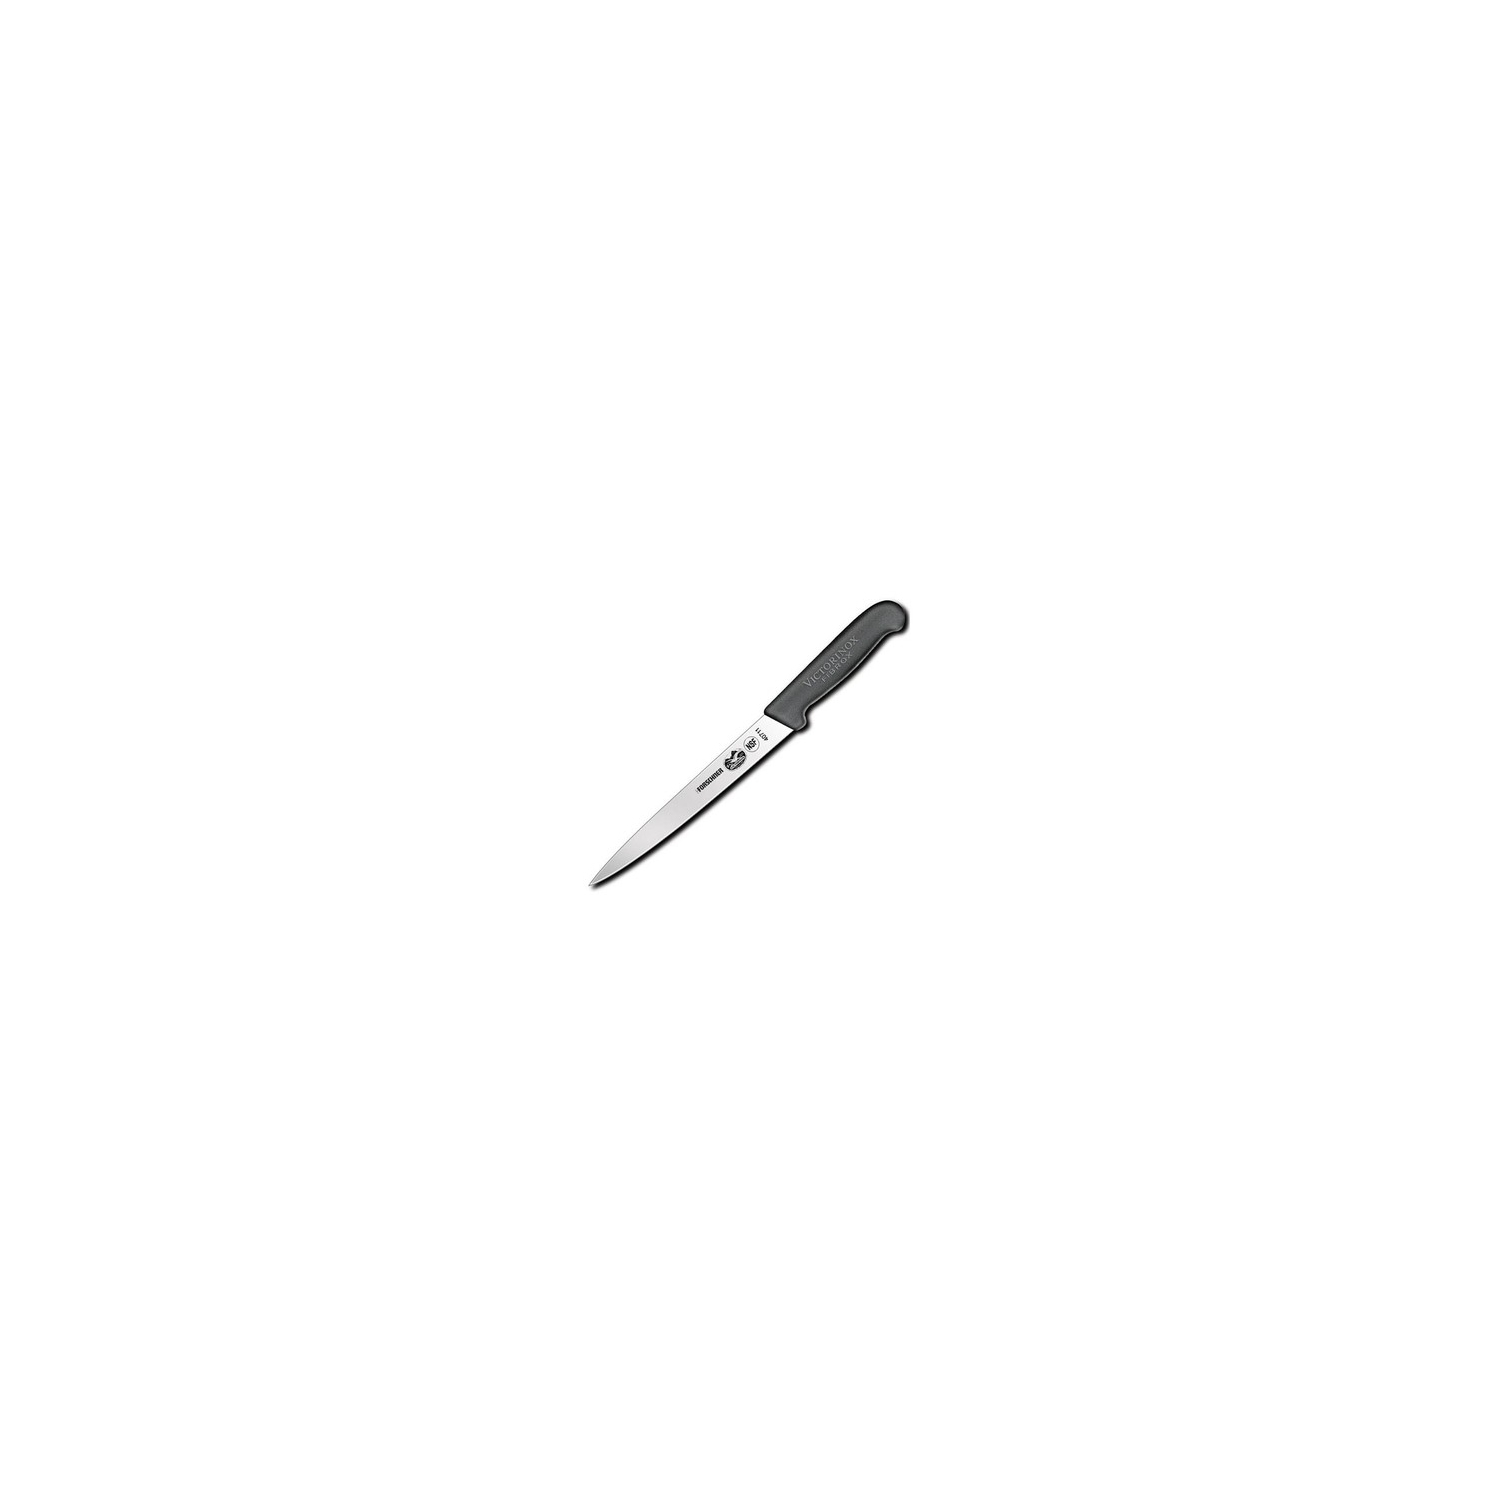 Fibrox 8" Semi-Flexible Filleting Knife - Victorinox (40711)